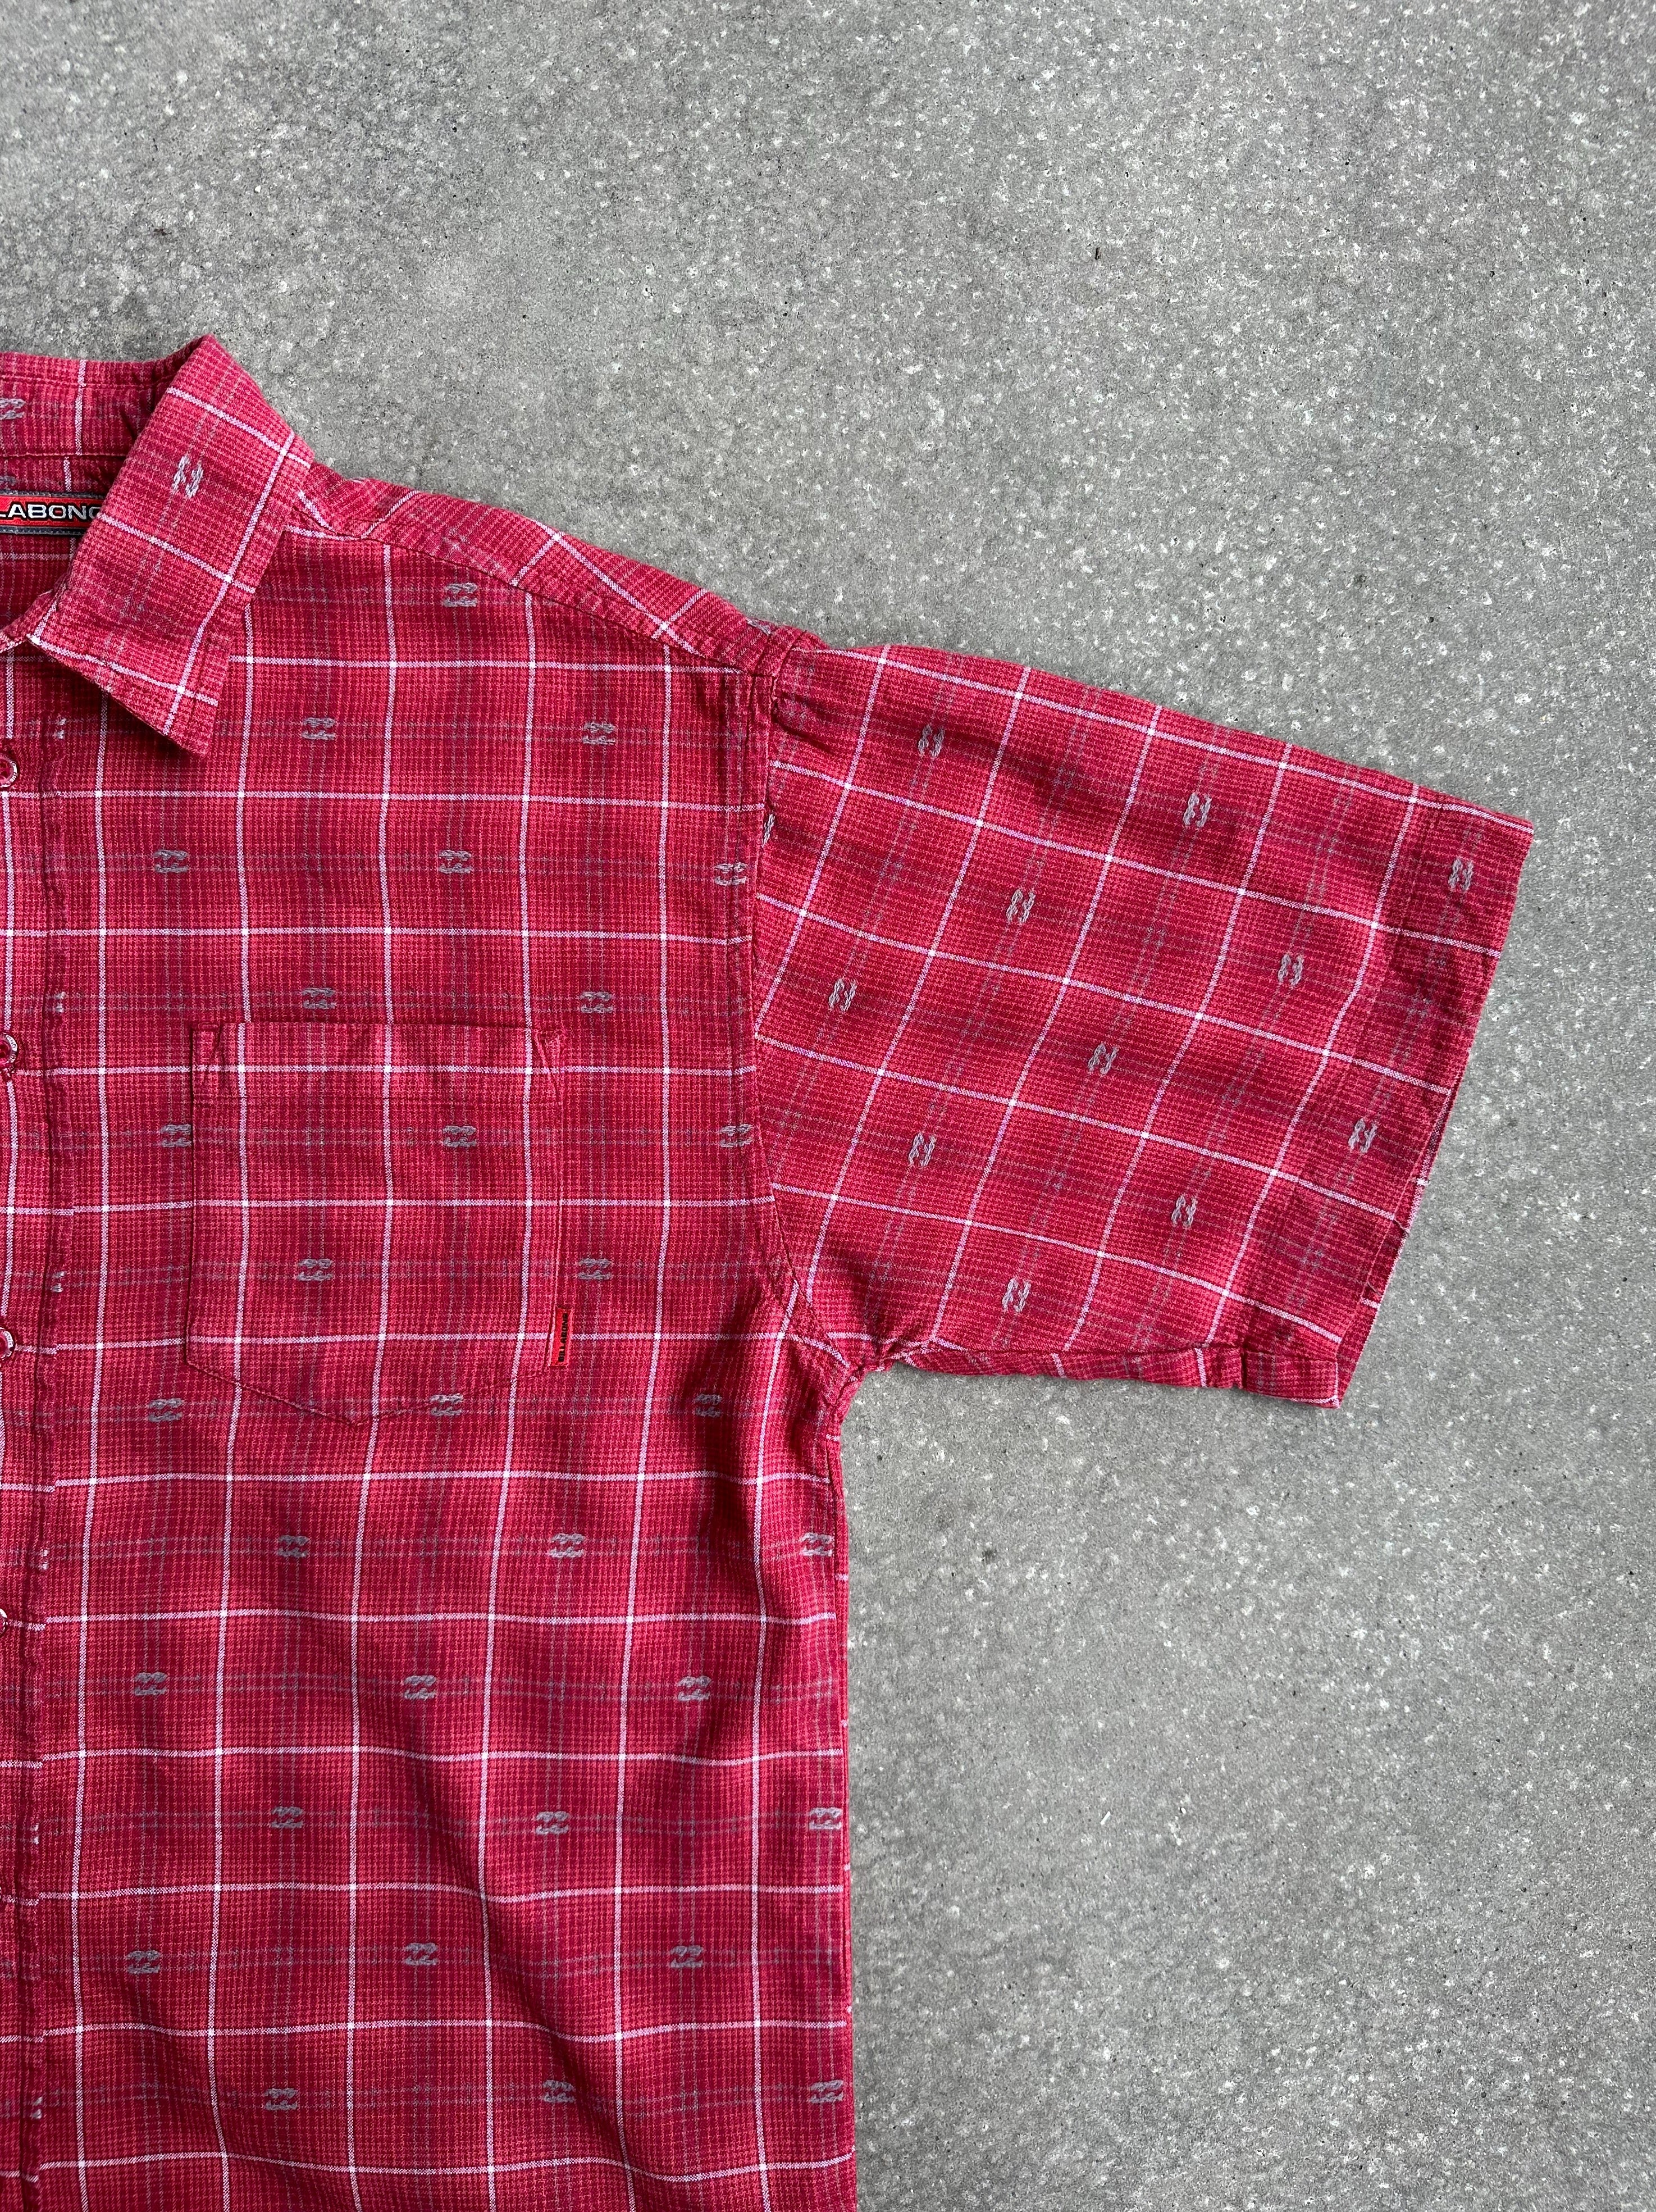 Vintage Billabong Shirt - Small